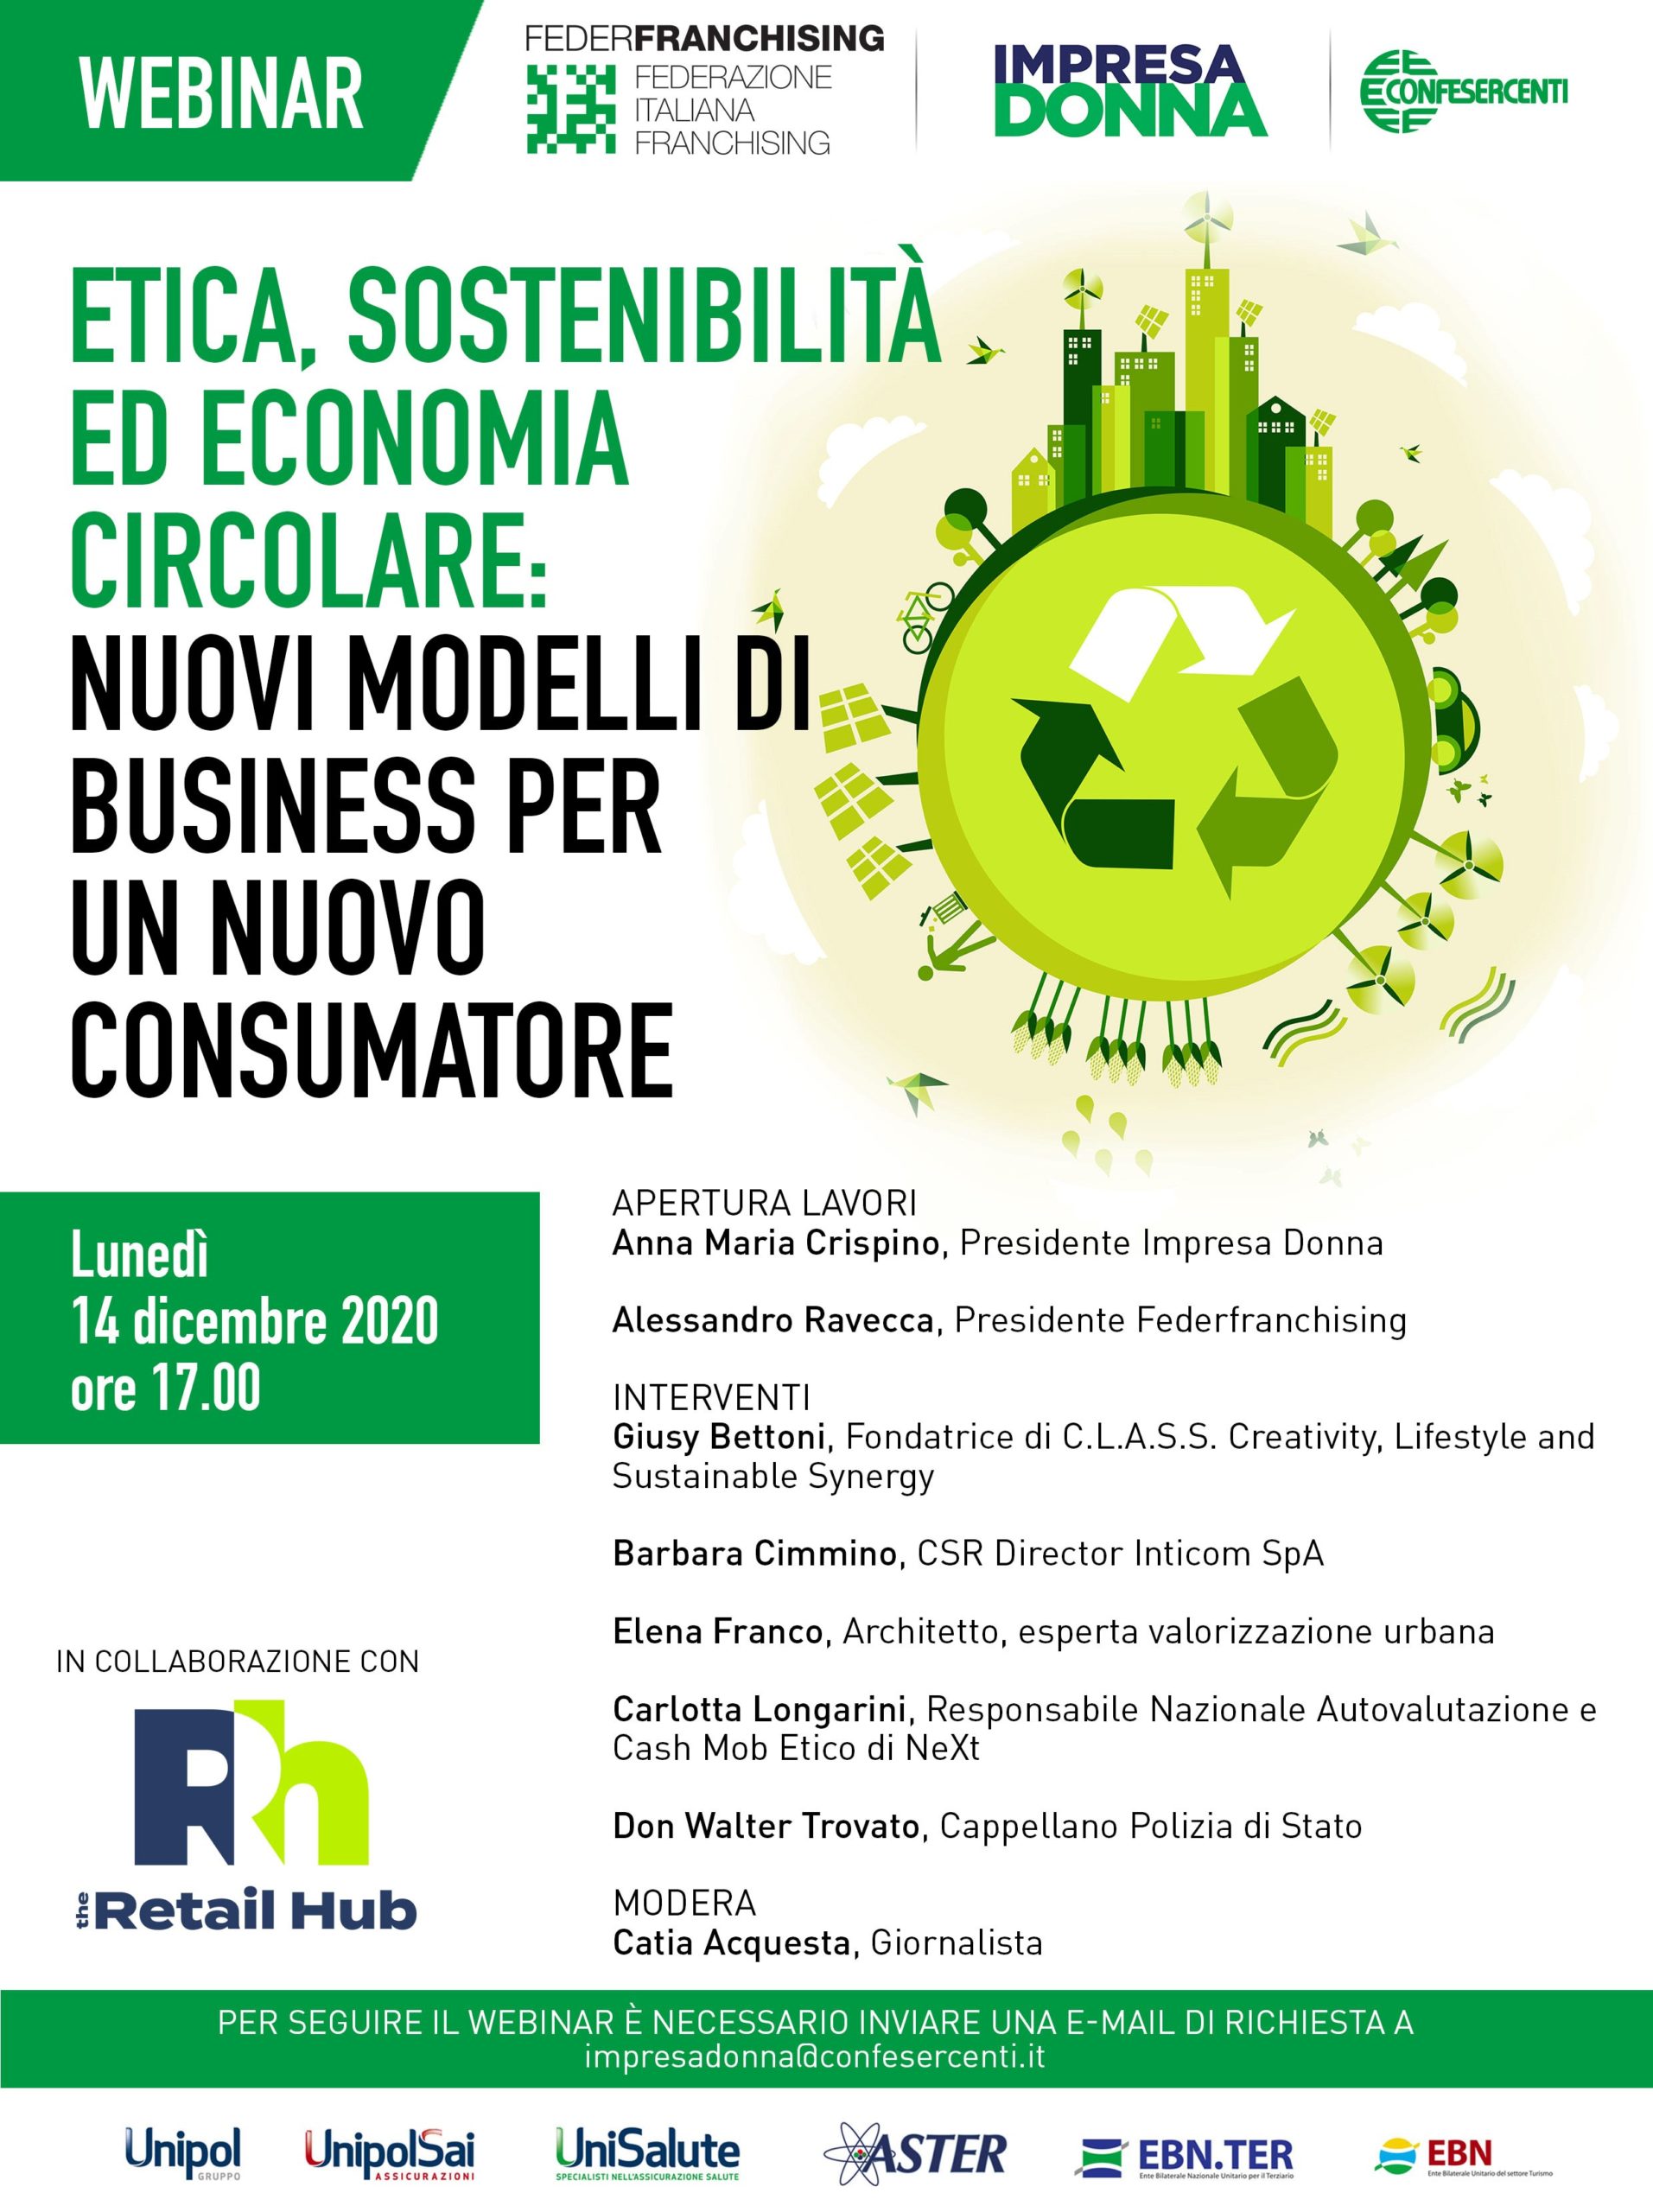 Webinar “Etica, Sostenibilità ed Economia Circolare: nuovi modelli di business per un nuovo Consumatore”